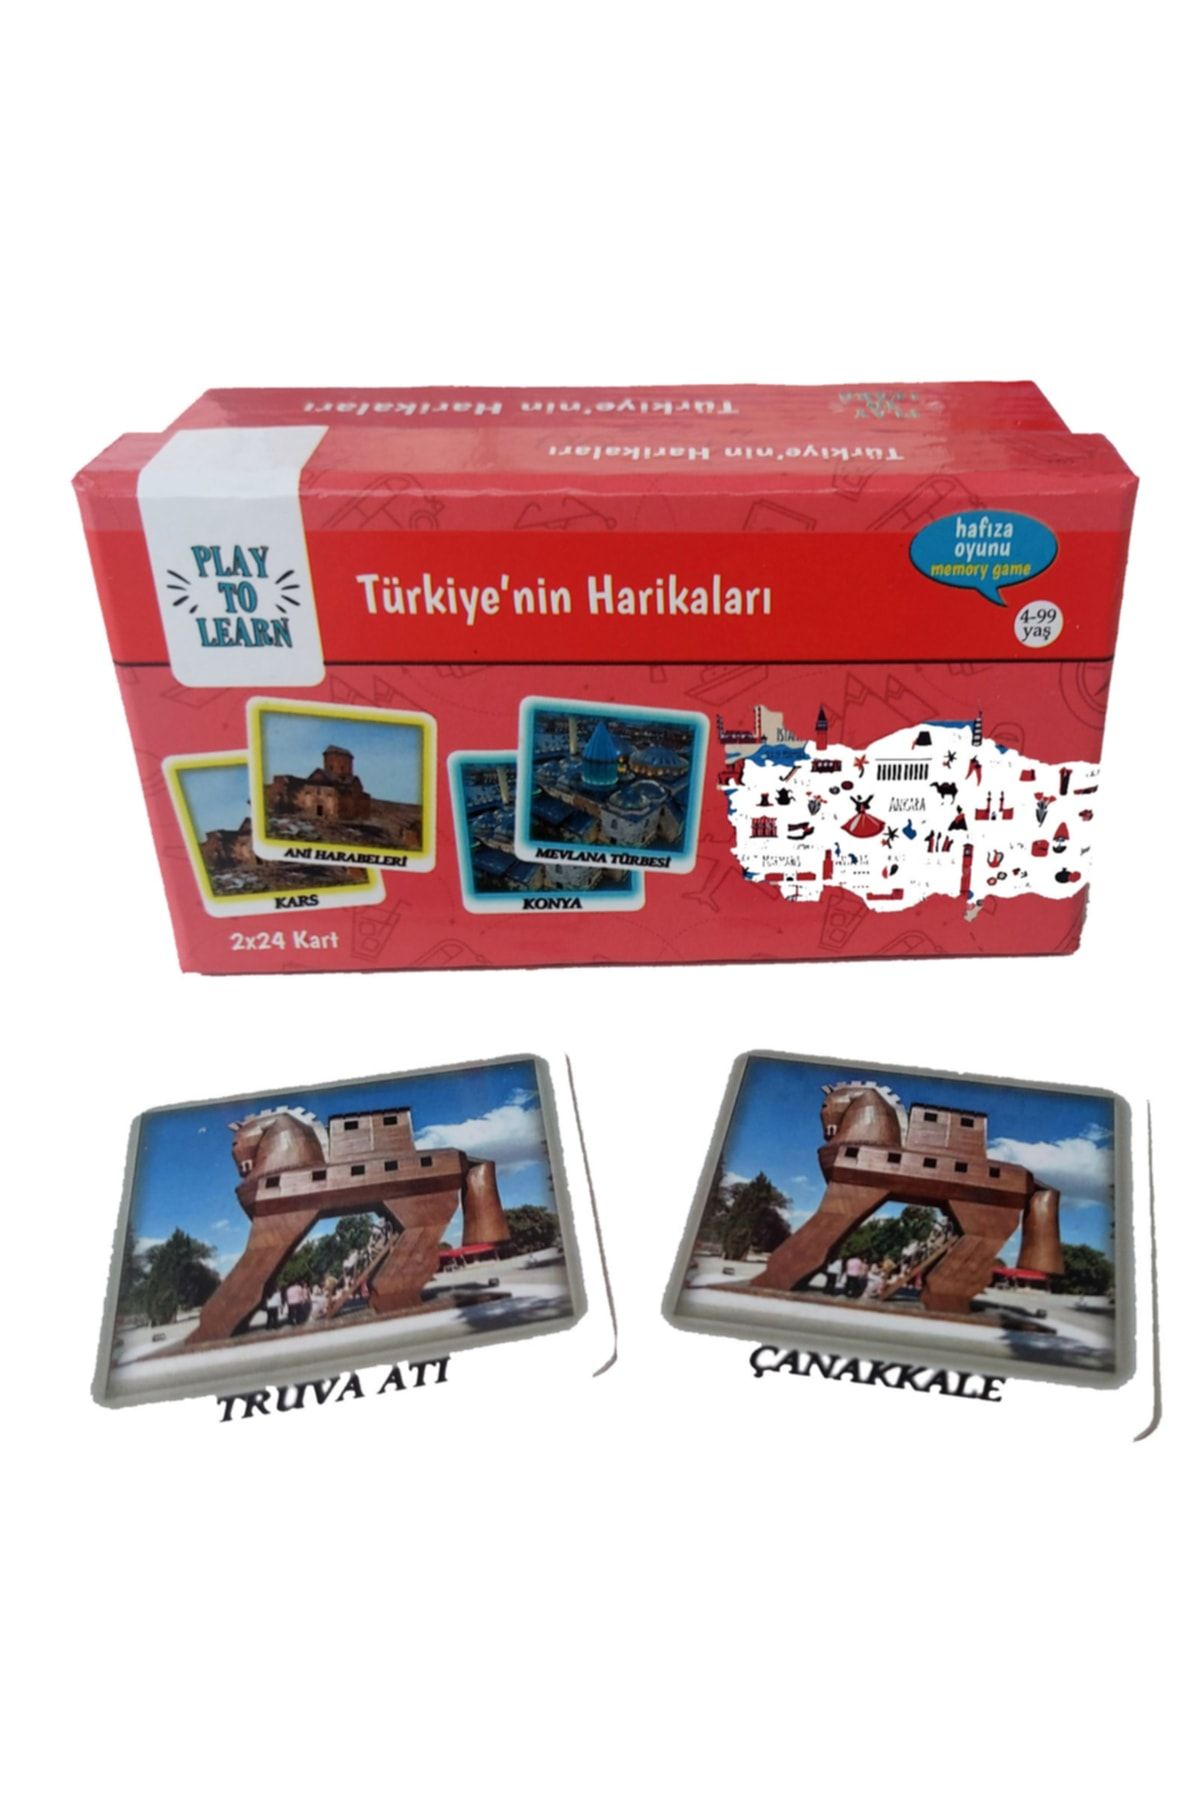 Play to Learn Türkiye'nin Harikaları - Genel Kültür Oyunu, Eğitici Kutu Oyunu, Dikkat Oyunu, Hafiza Oyunu